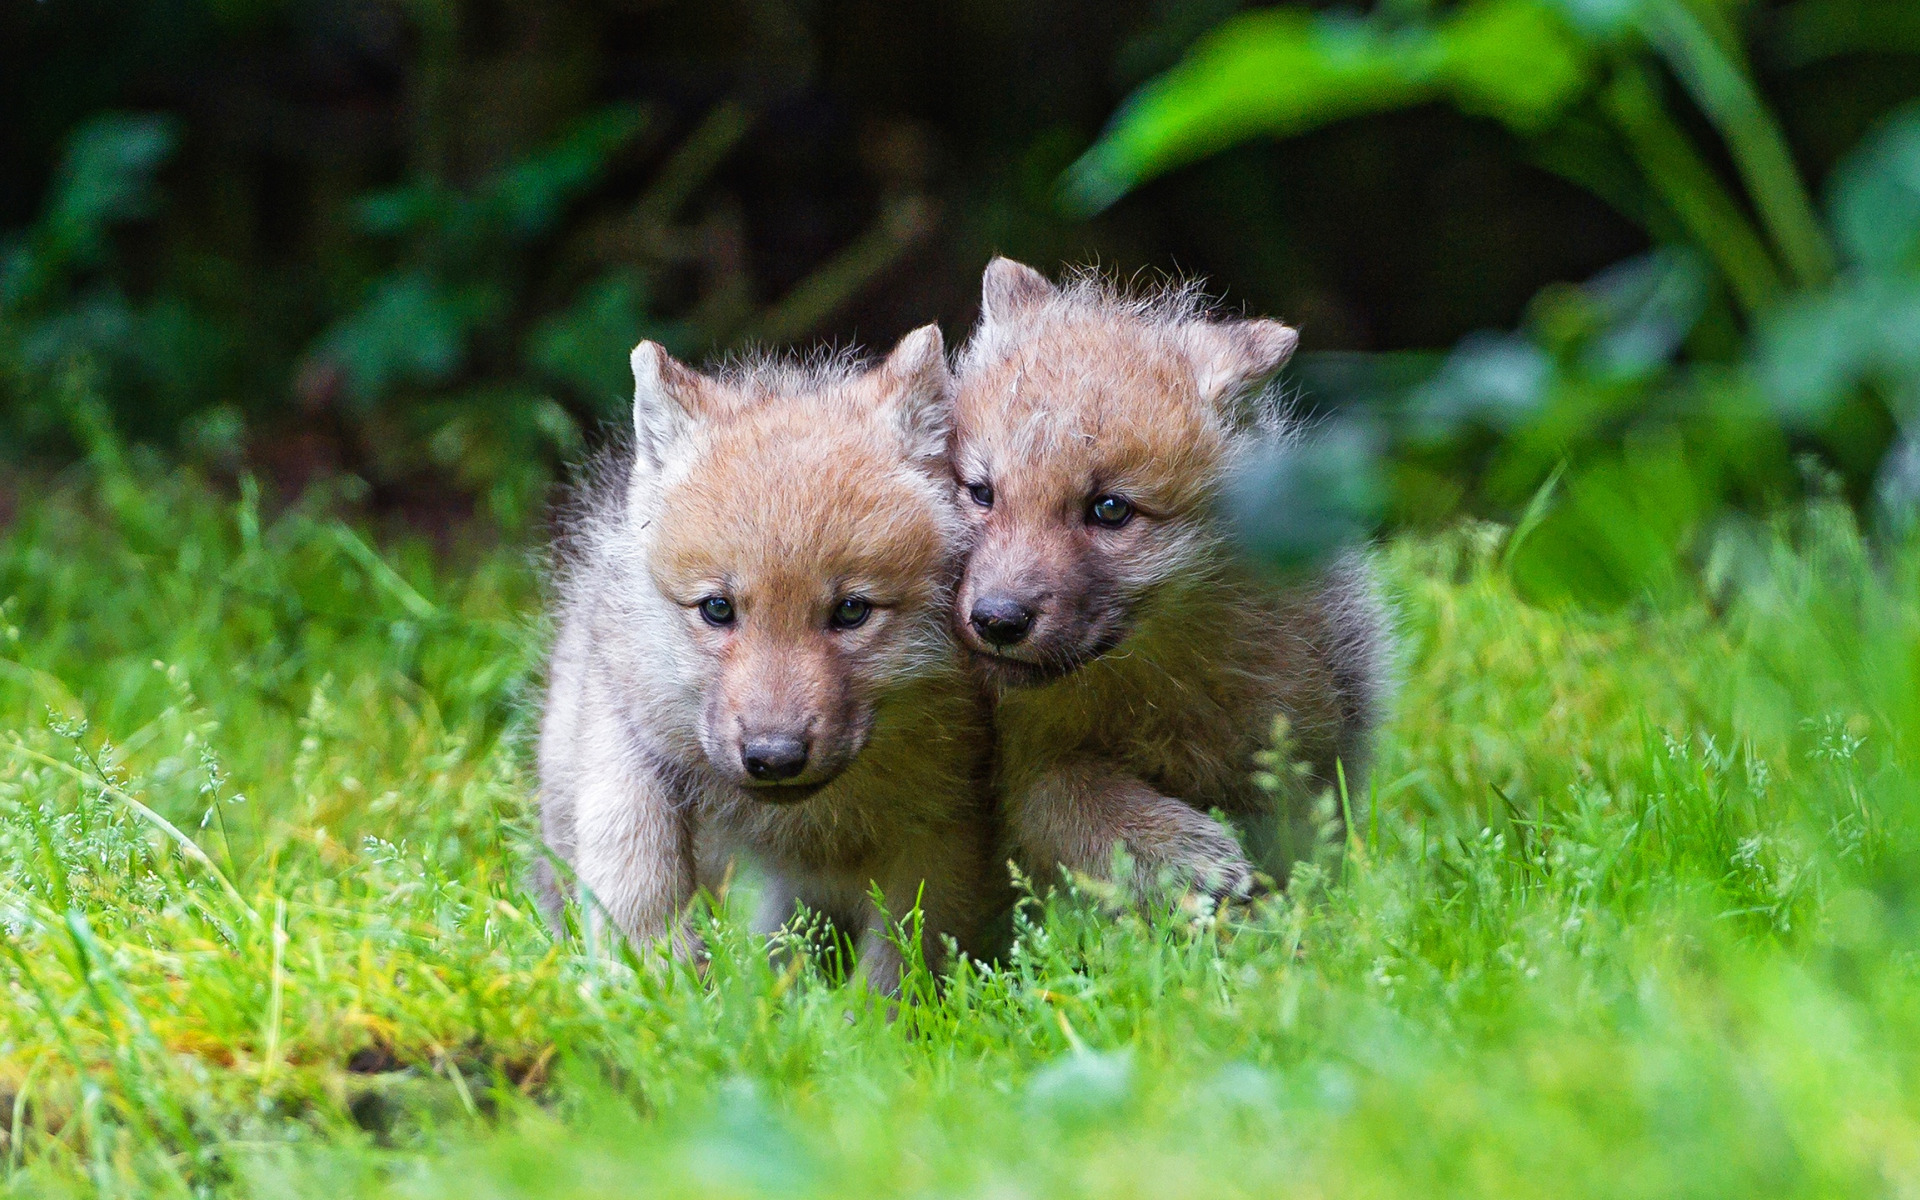 ダウンロード画像 少し頭狼 かわいい動物たち 野生動物 小狼 緑の芝生 面白い動物 オオカミ 画面の解像度 19x10 壁紙 デスクトップ上